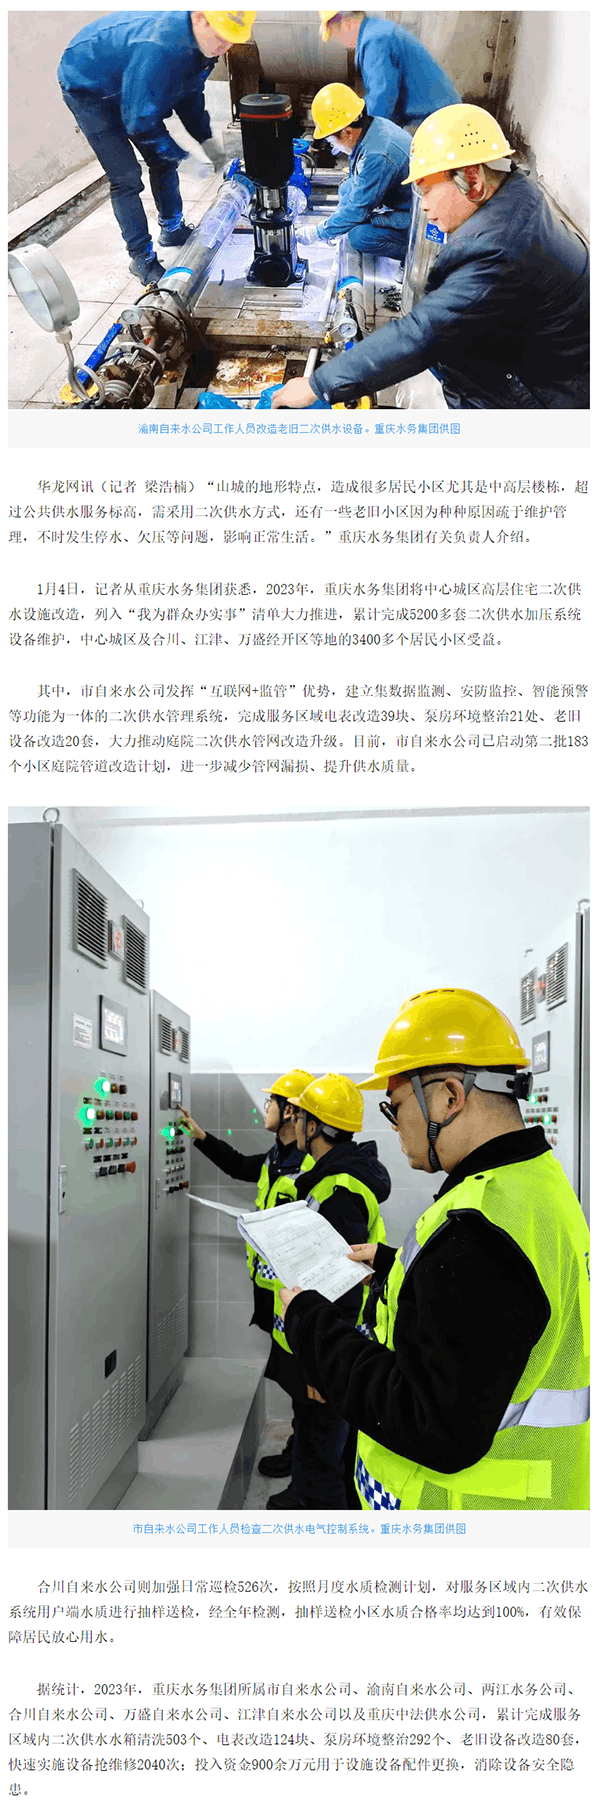 打通二次供水服务“最后一米” 重庆3400多个居民小区受益- 网络记者 -华龙网.png